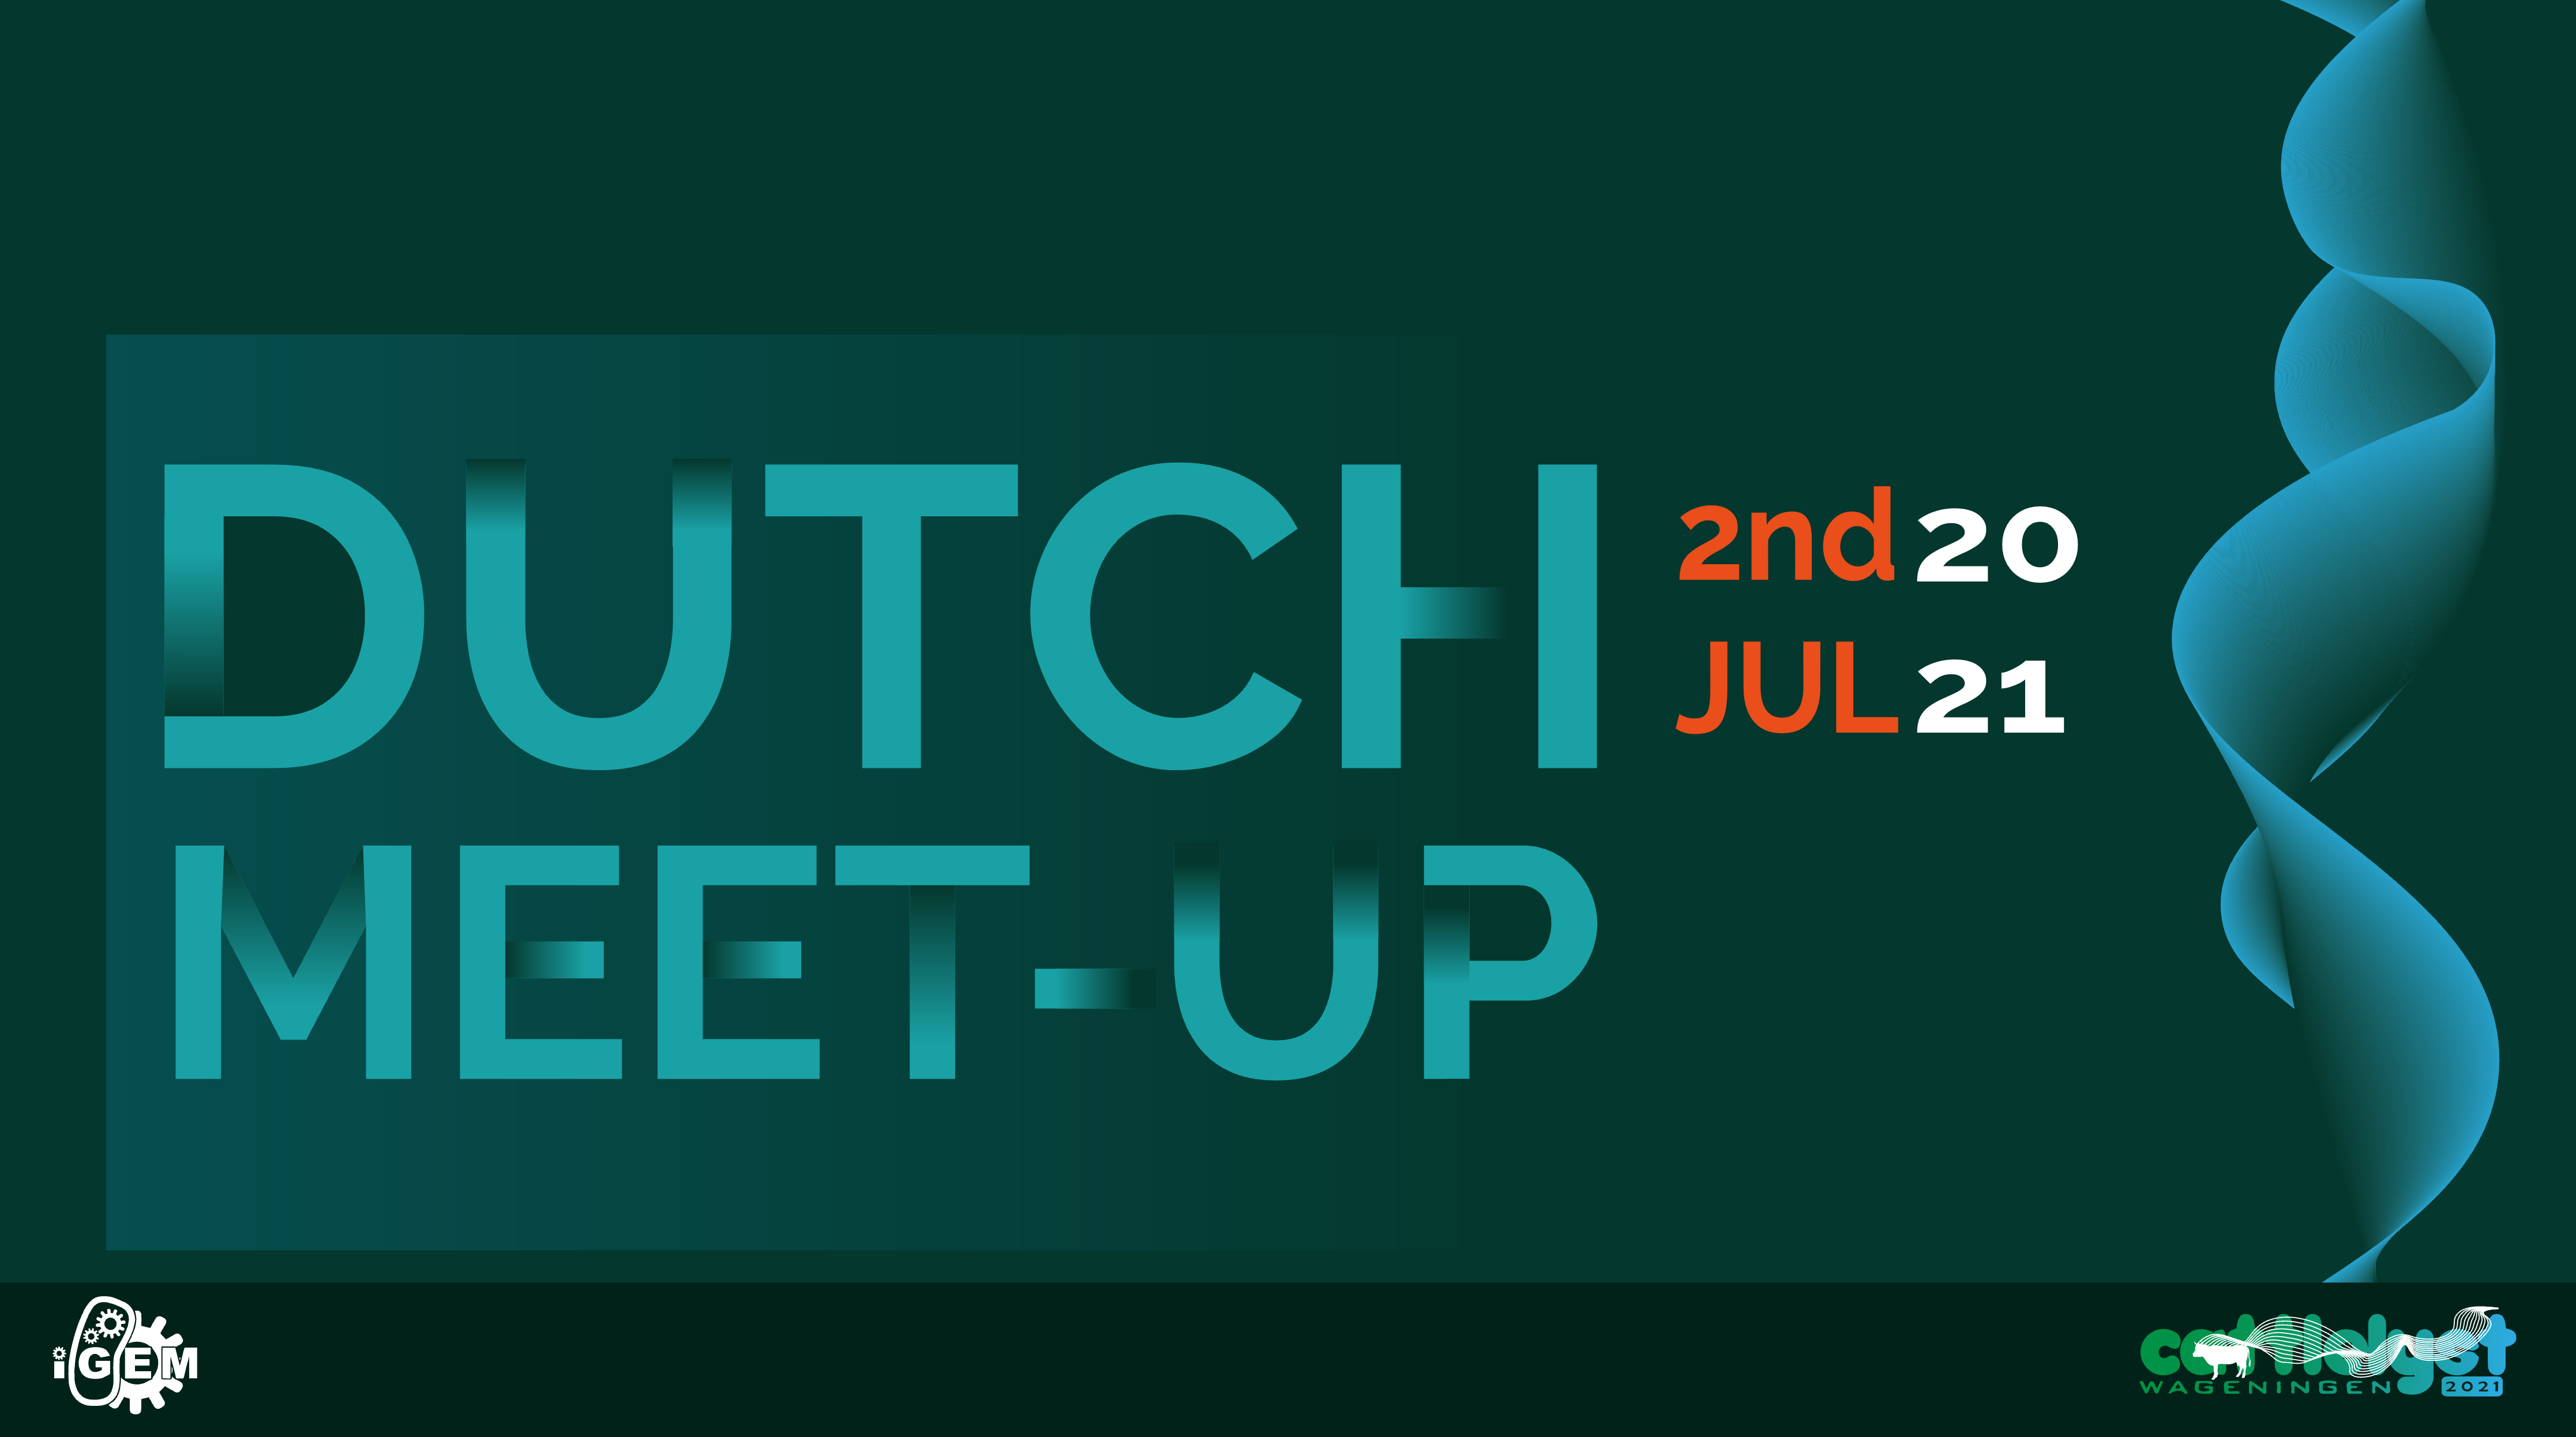 Schedule Dutch meetup